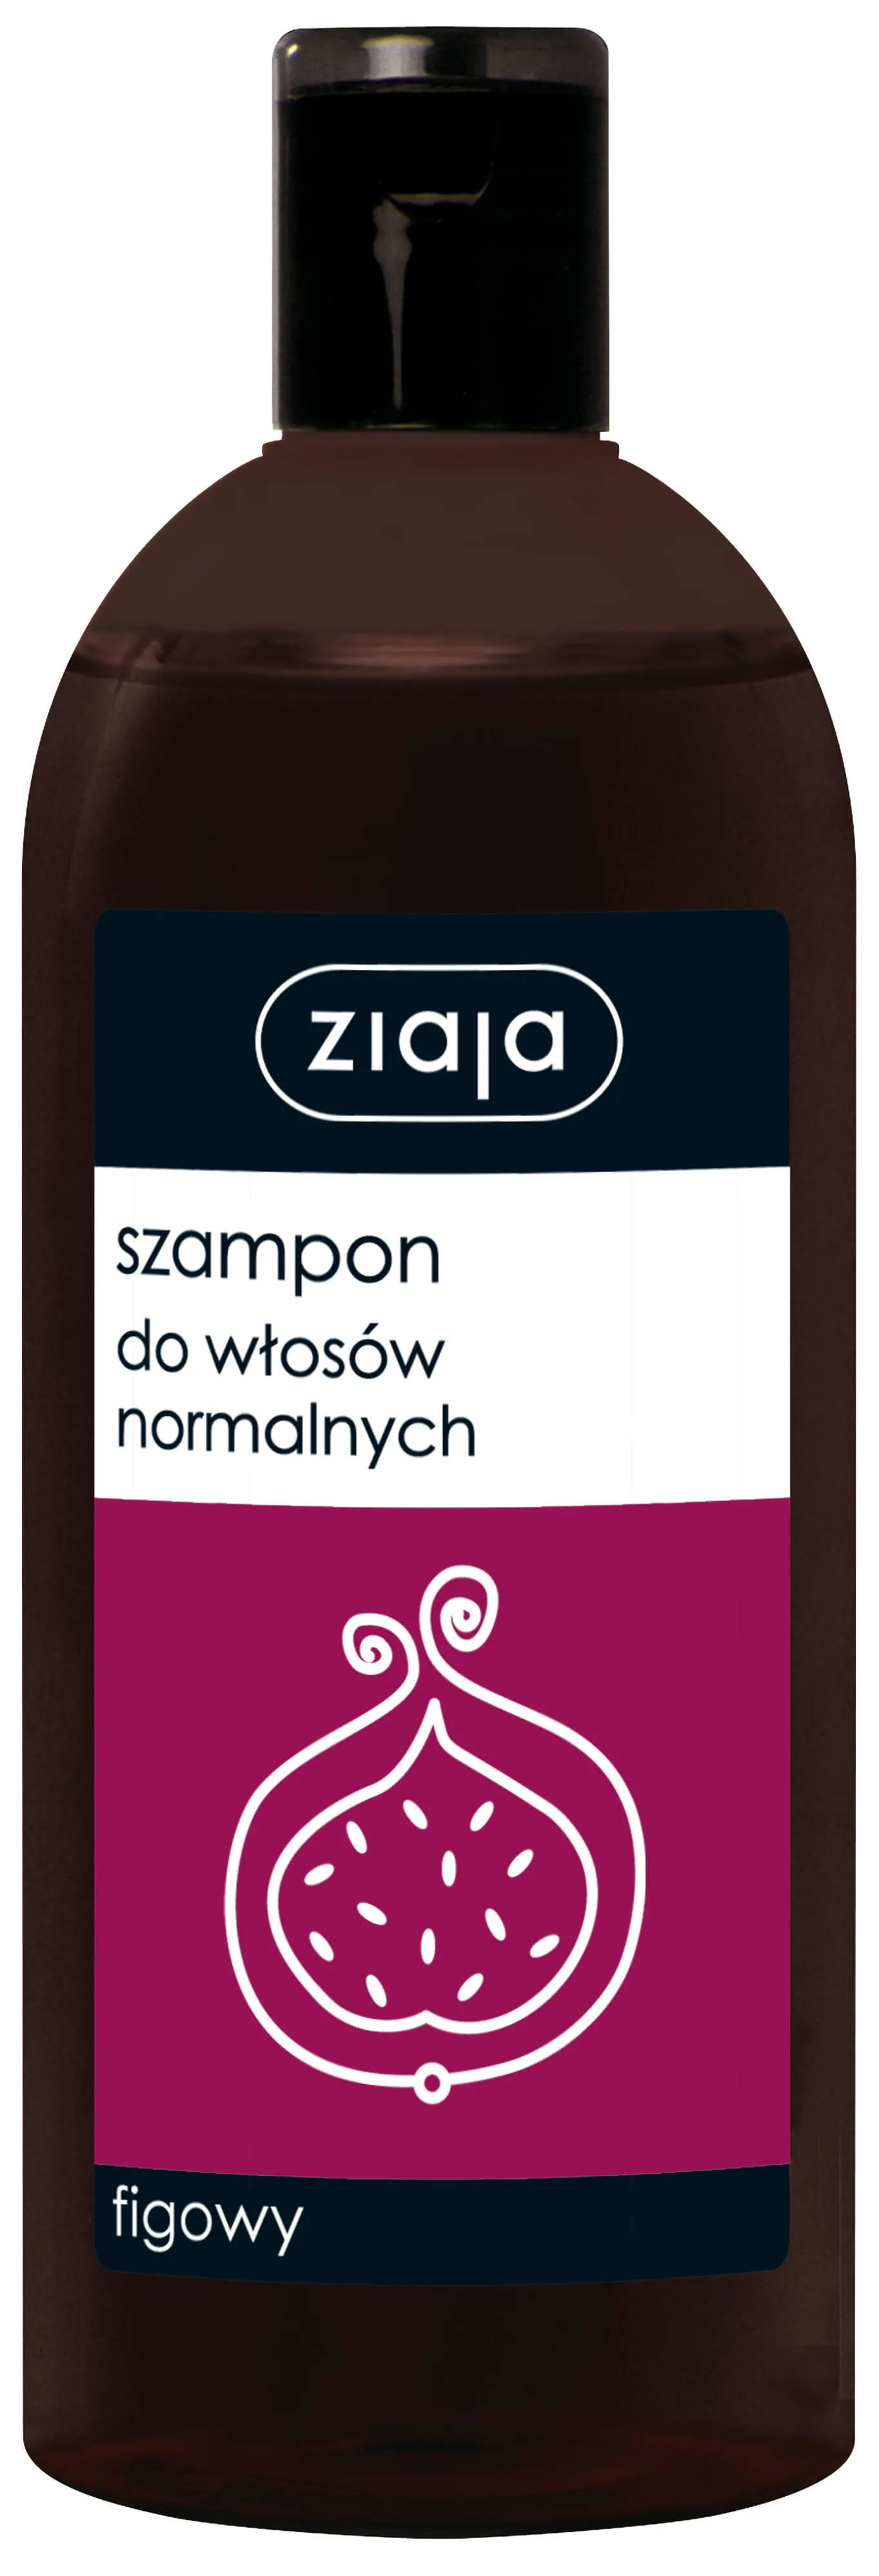 Ziaja, szampon figowy do włosów normalnych, 500 ml